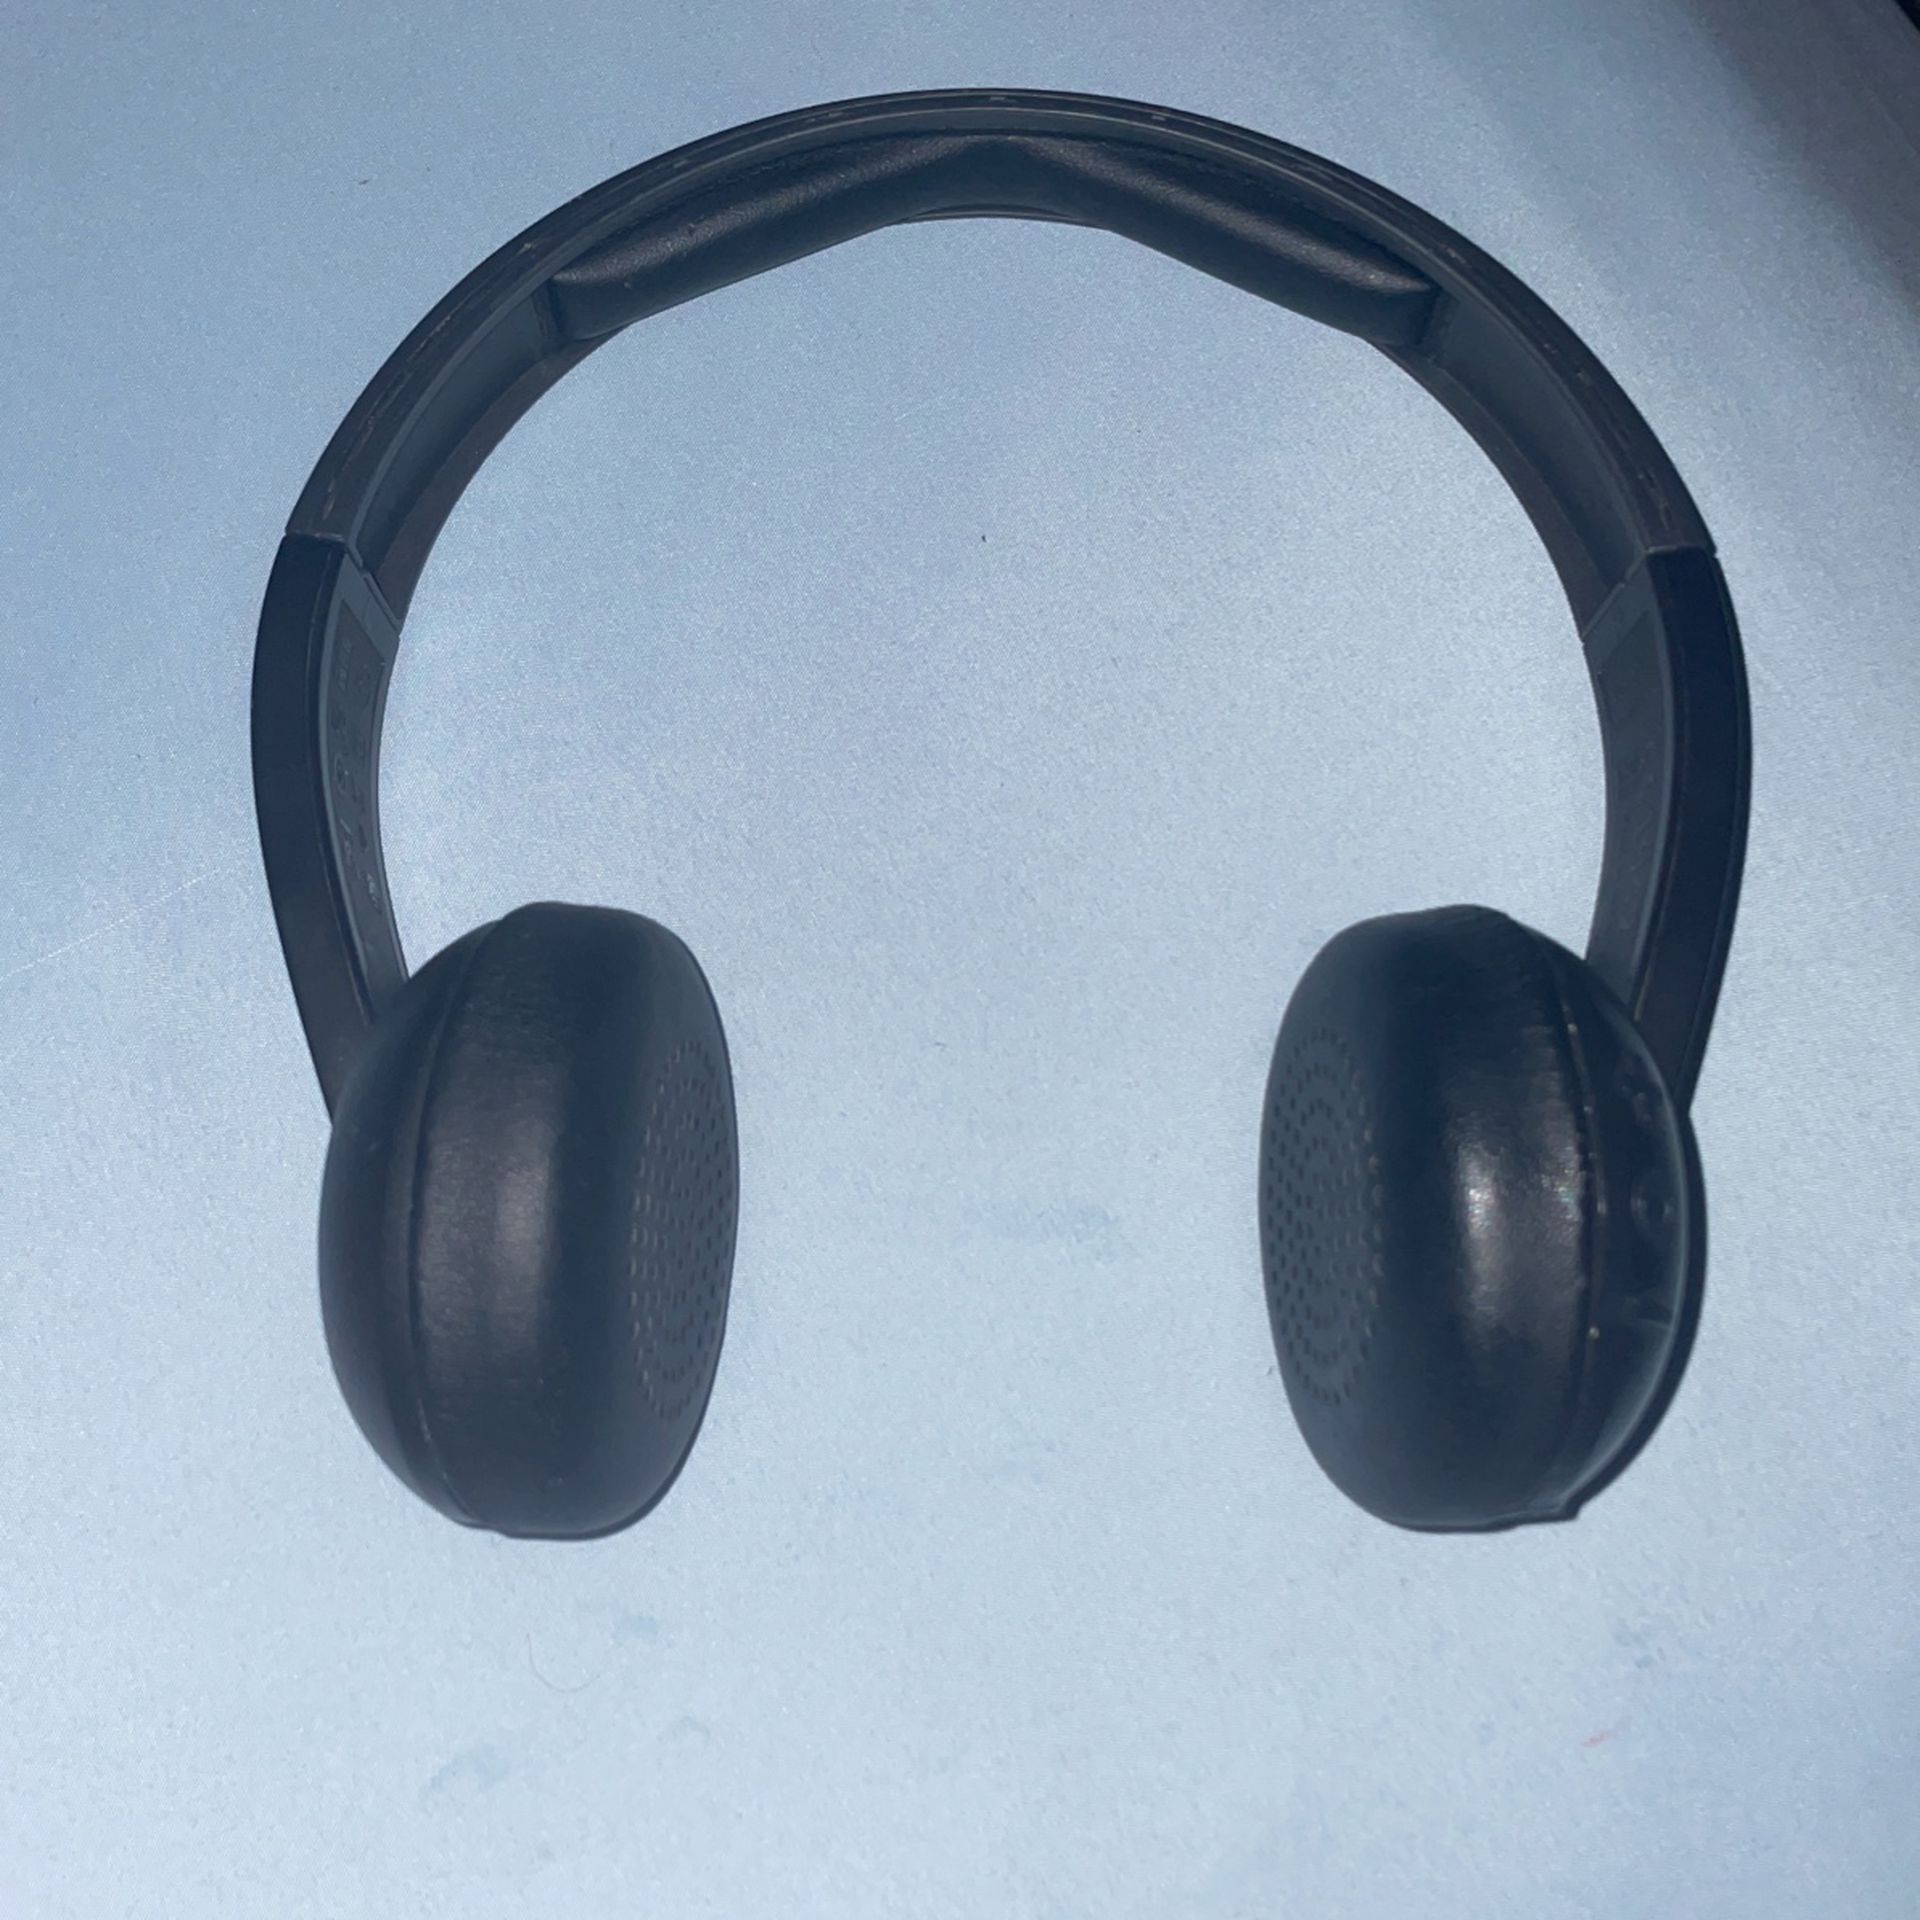 Skullcandy Uproar Wireless On-Ear Headphone - Black